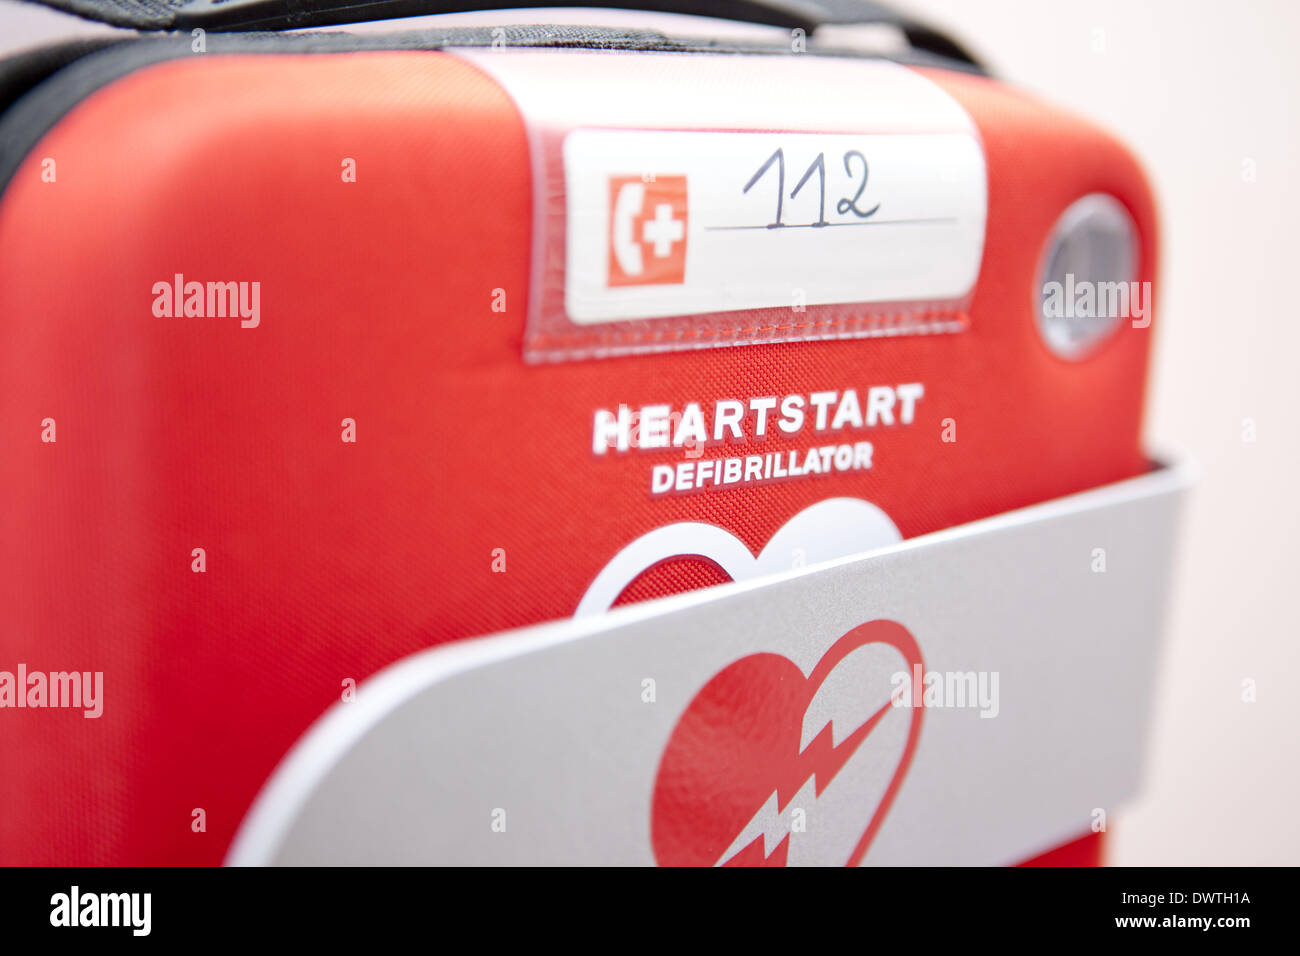 Automatic defibrillator Stock Photo